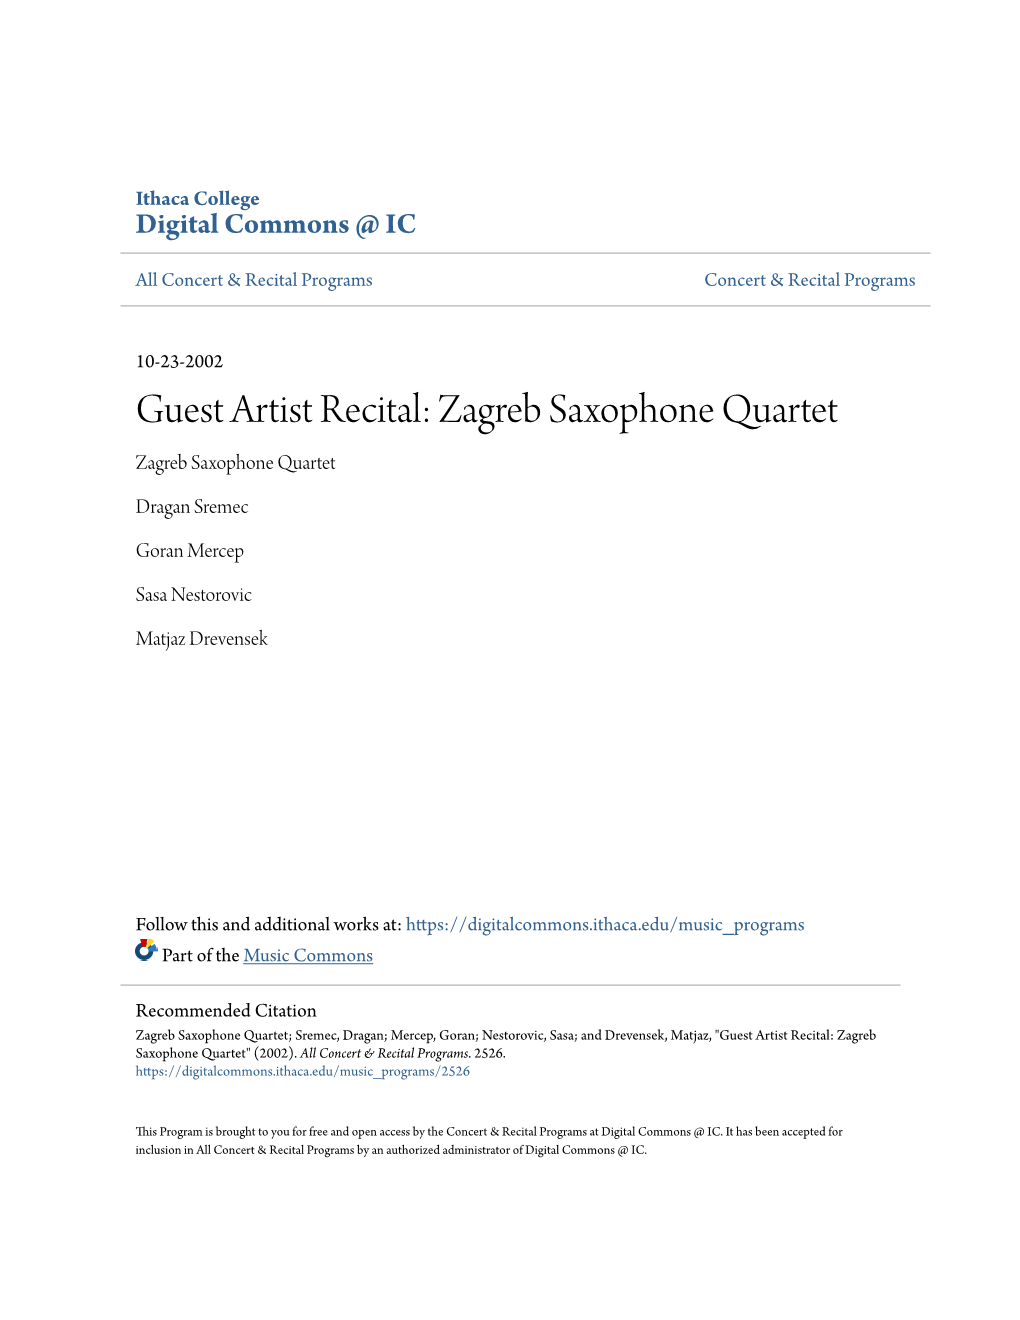 Zagreb Saxophone Quartet Zagreb Saxophone Quartet